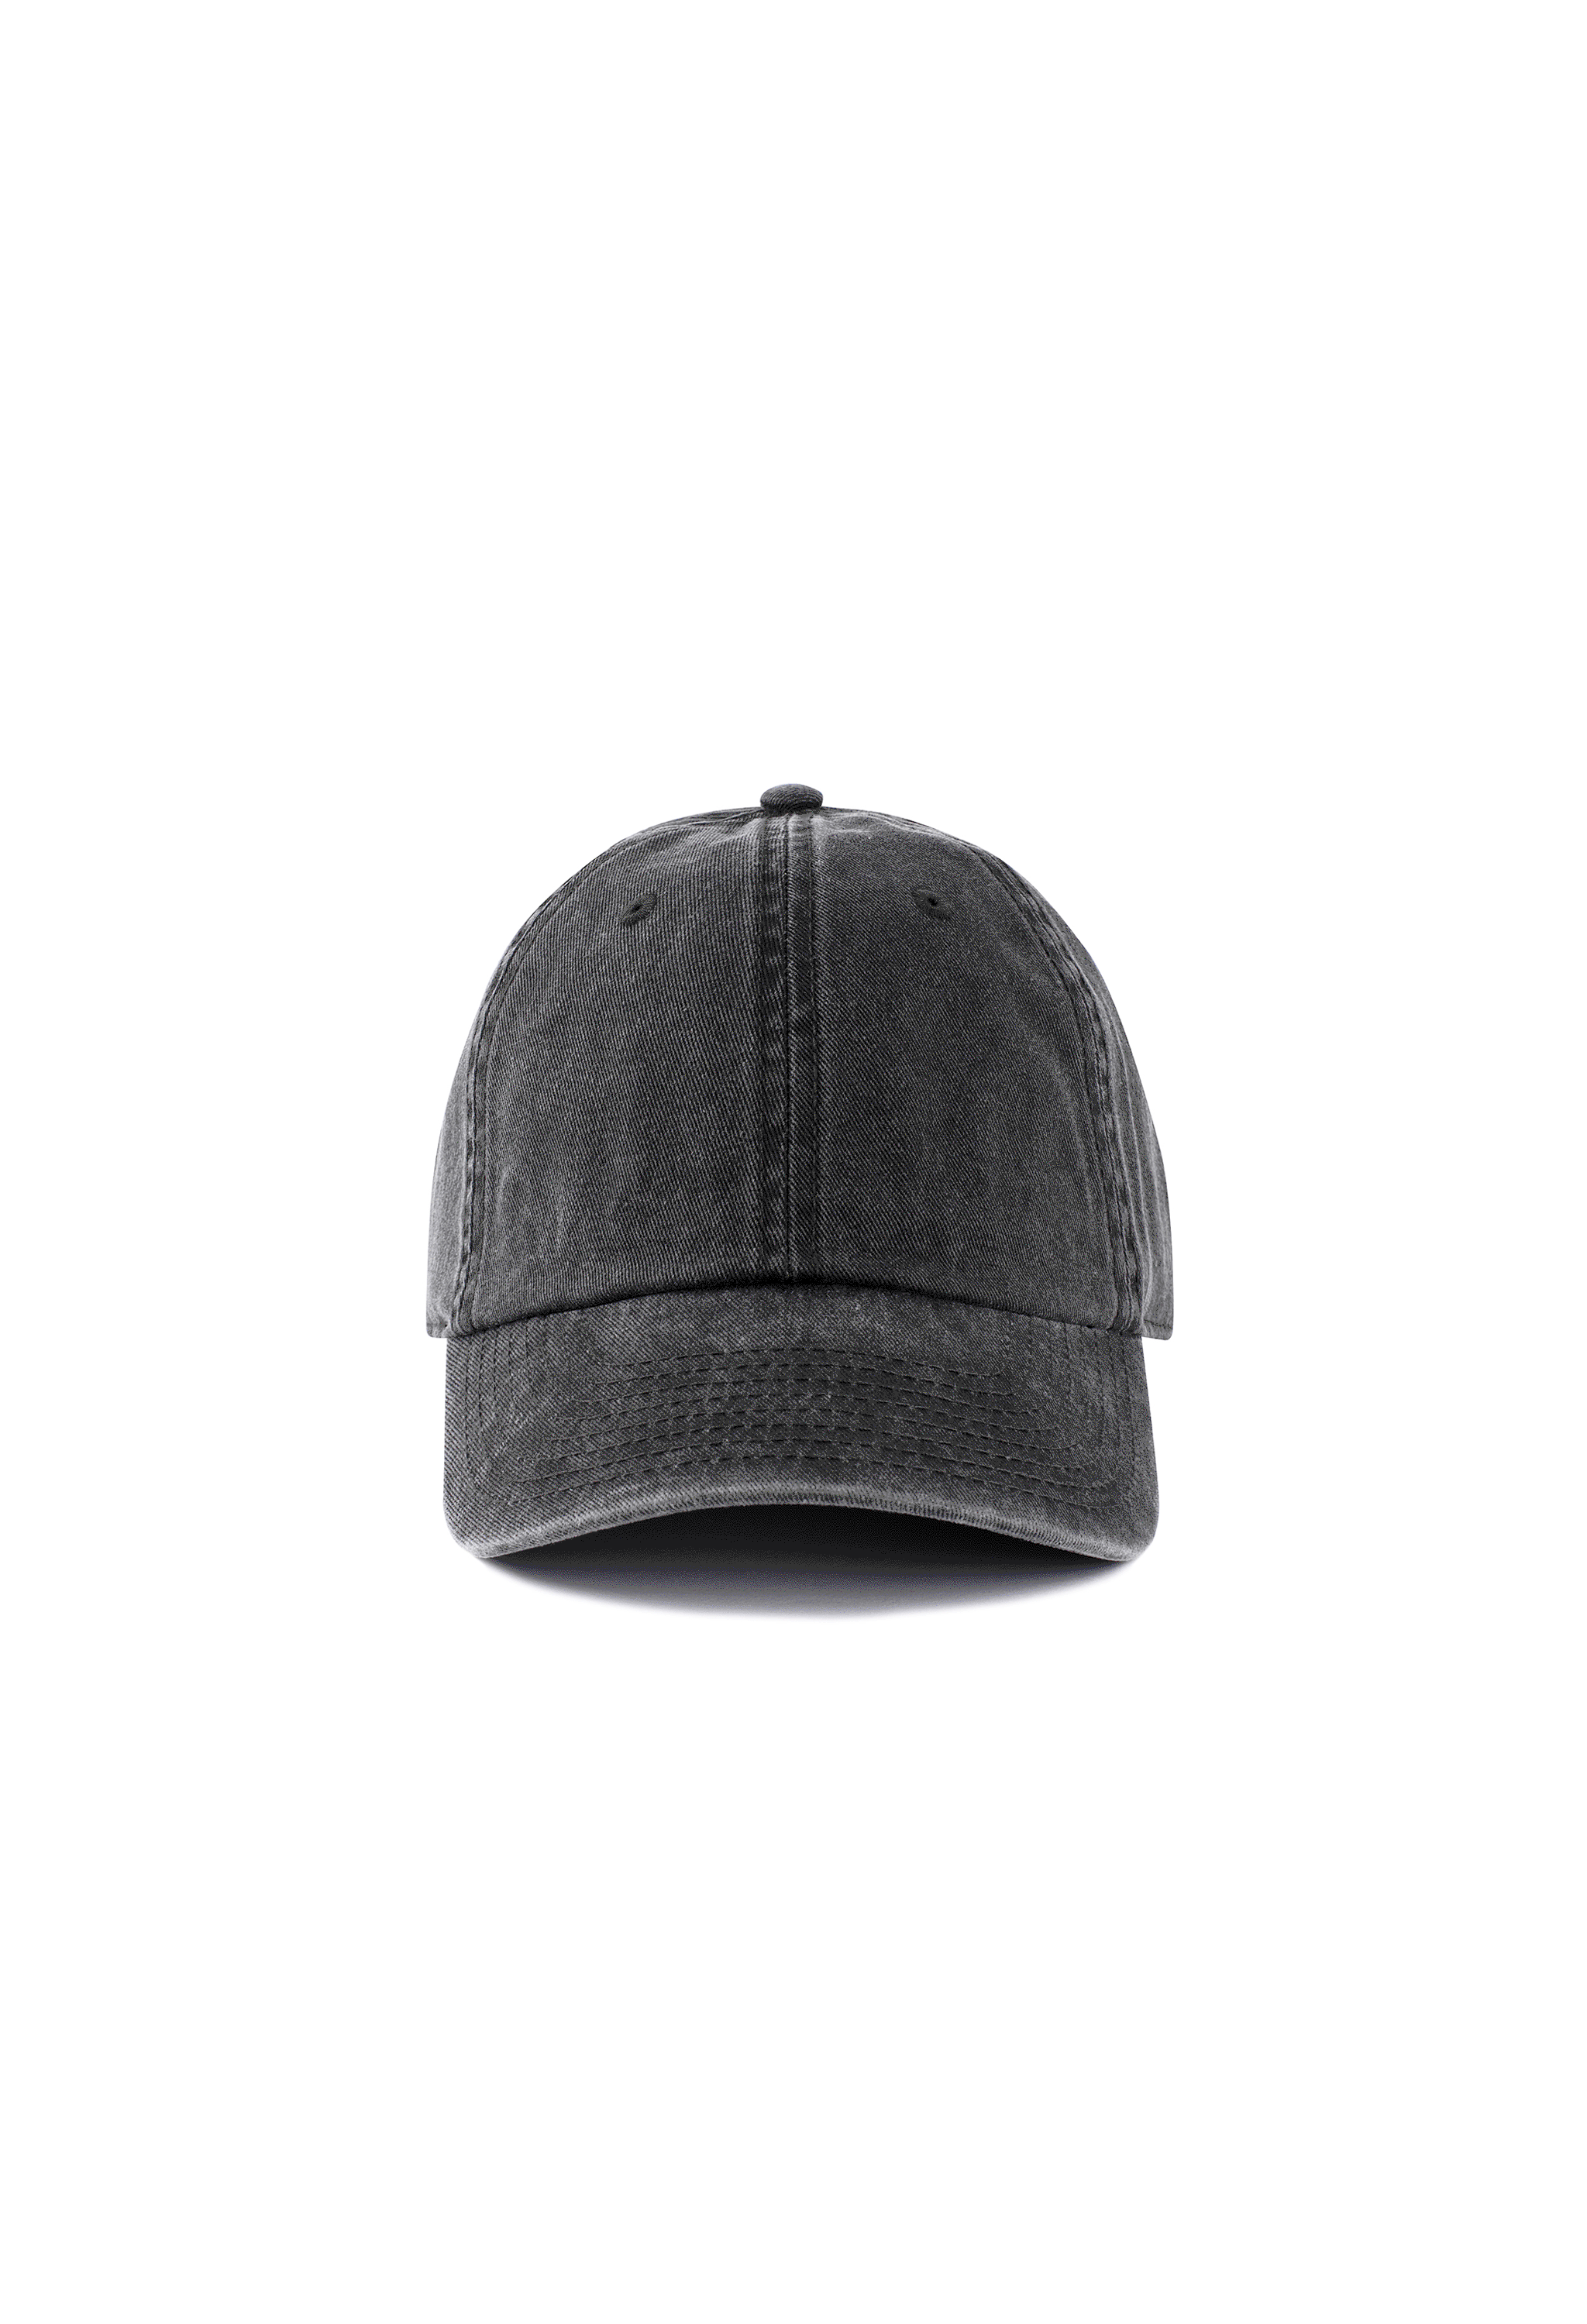 Black Cap (Custom Option)